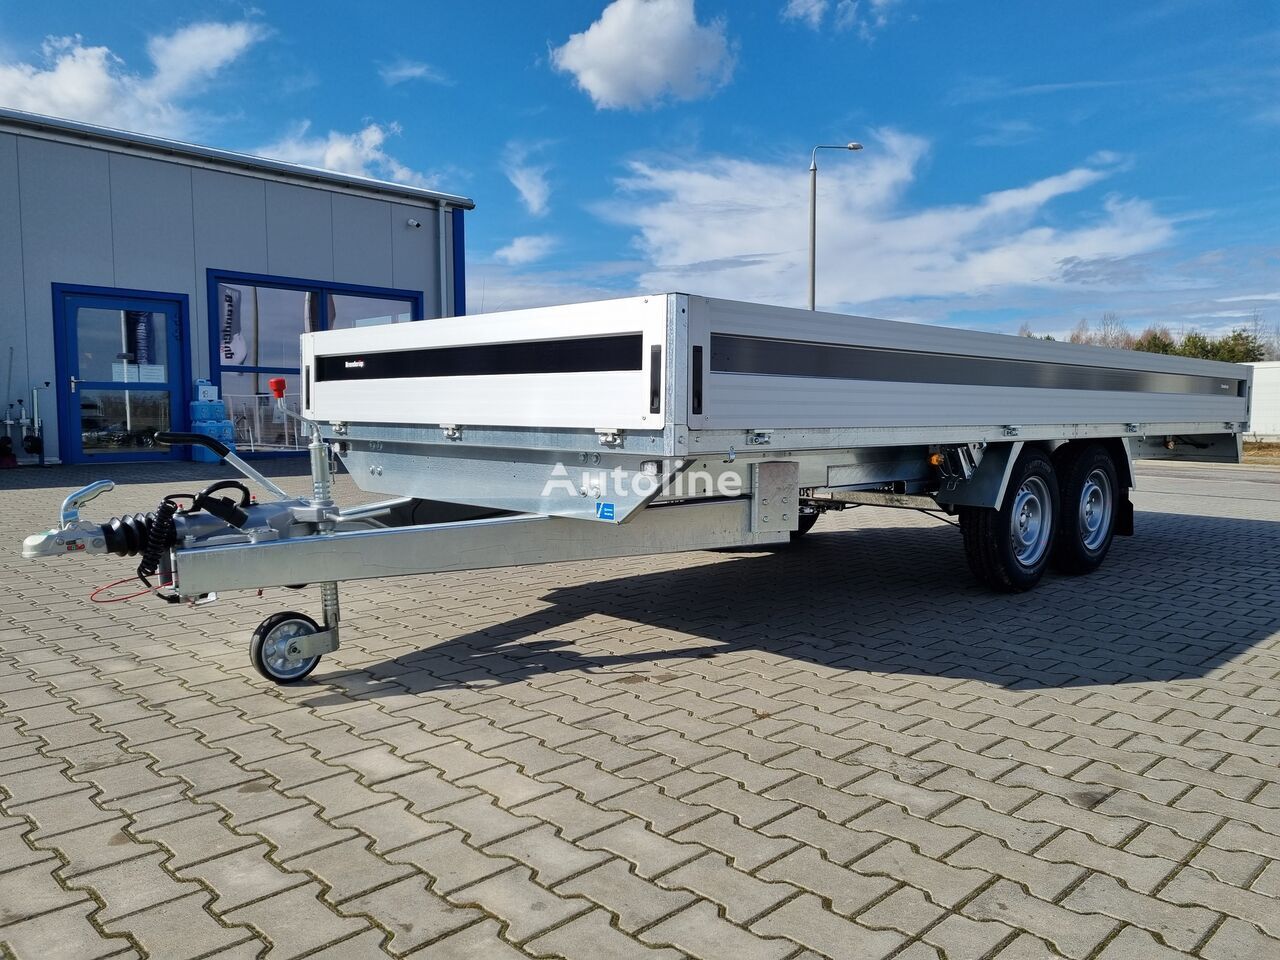 Nieuw Open/ Plateau aanhangwagen Brenderup 5520 WATB 3,5T GVW 517x204 cm 5m long trailer platform: afbeelding 9